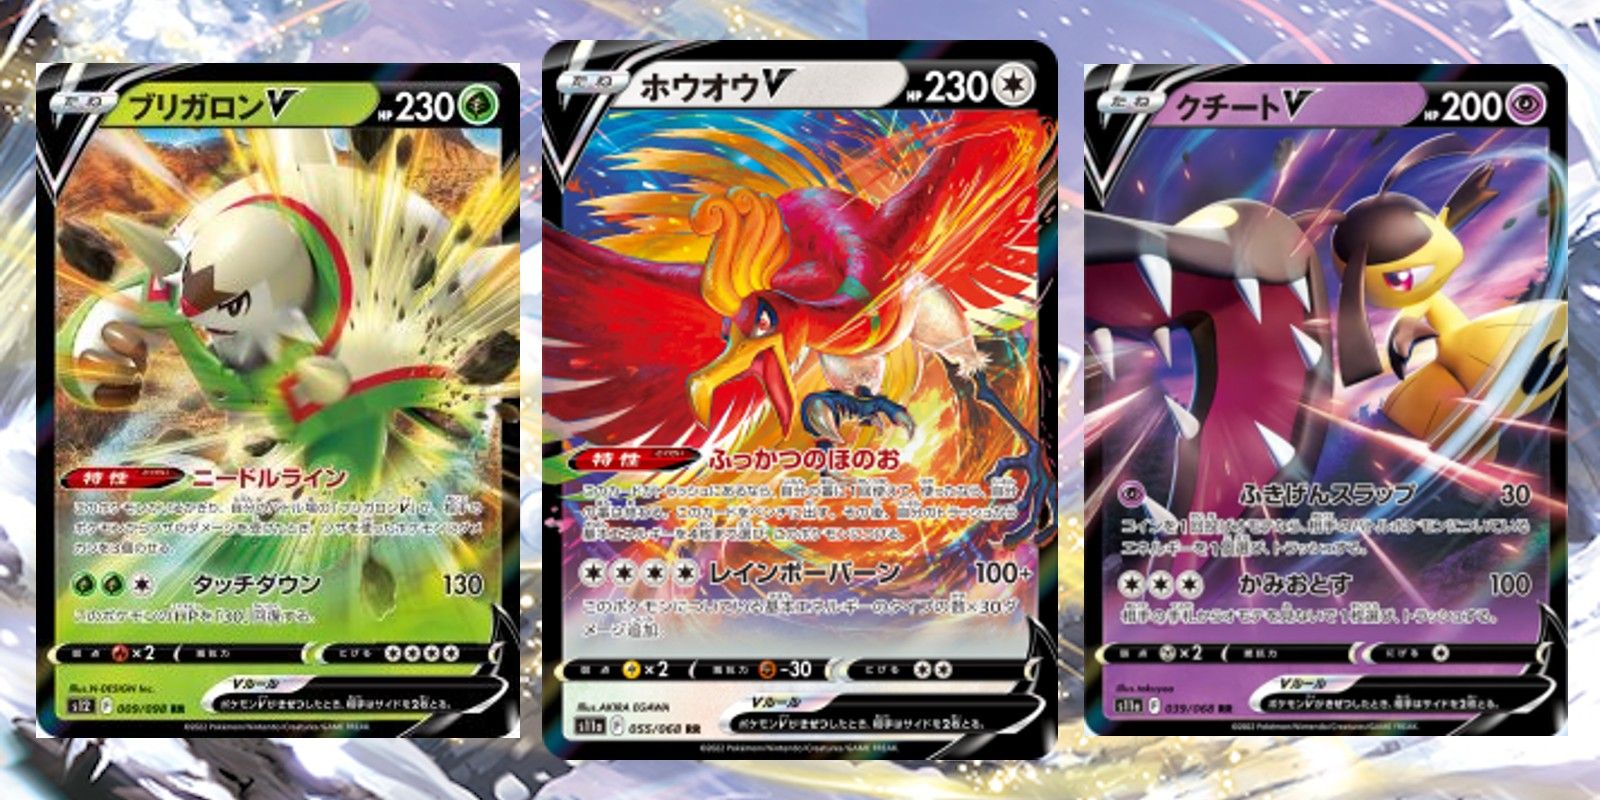 Pokémon TCG: Every V, VMAX, & VSTAR Card In Silver Tempest